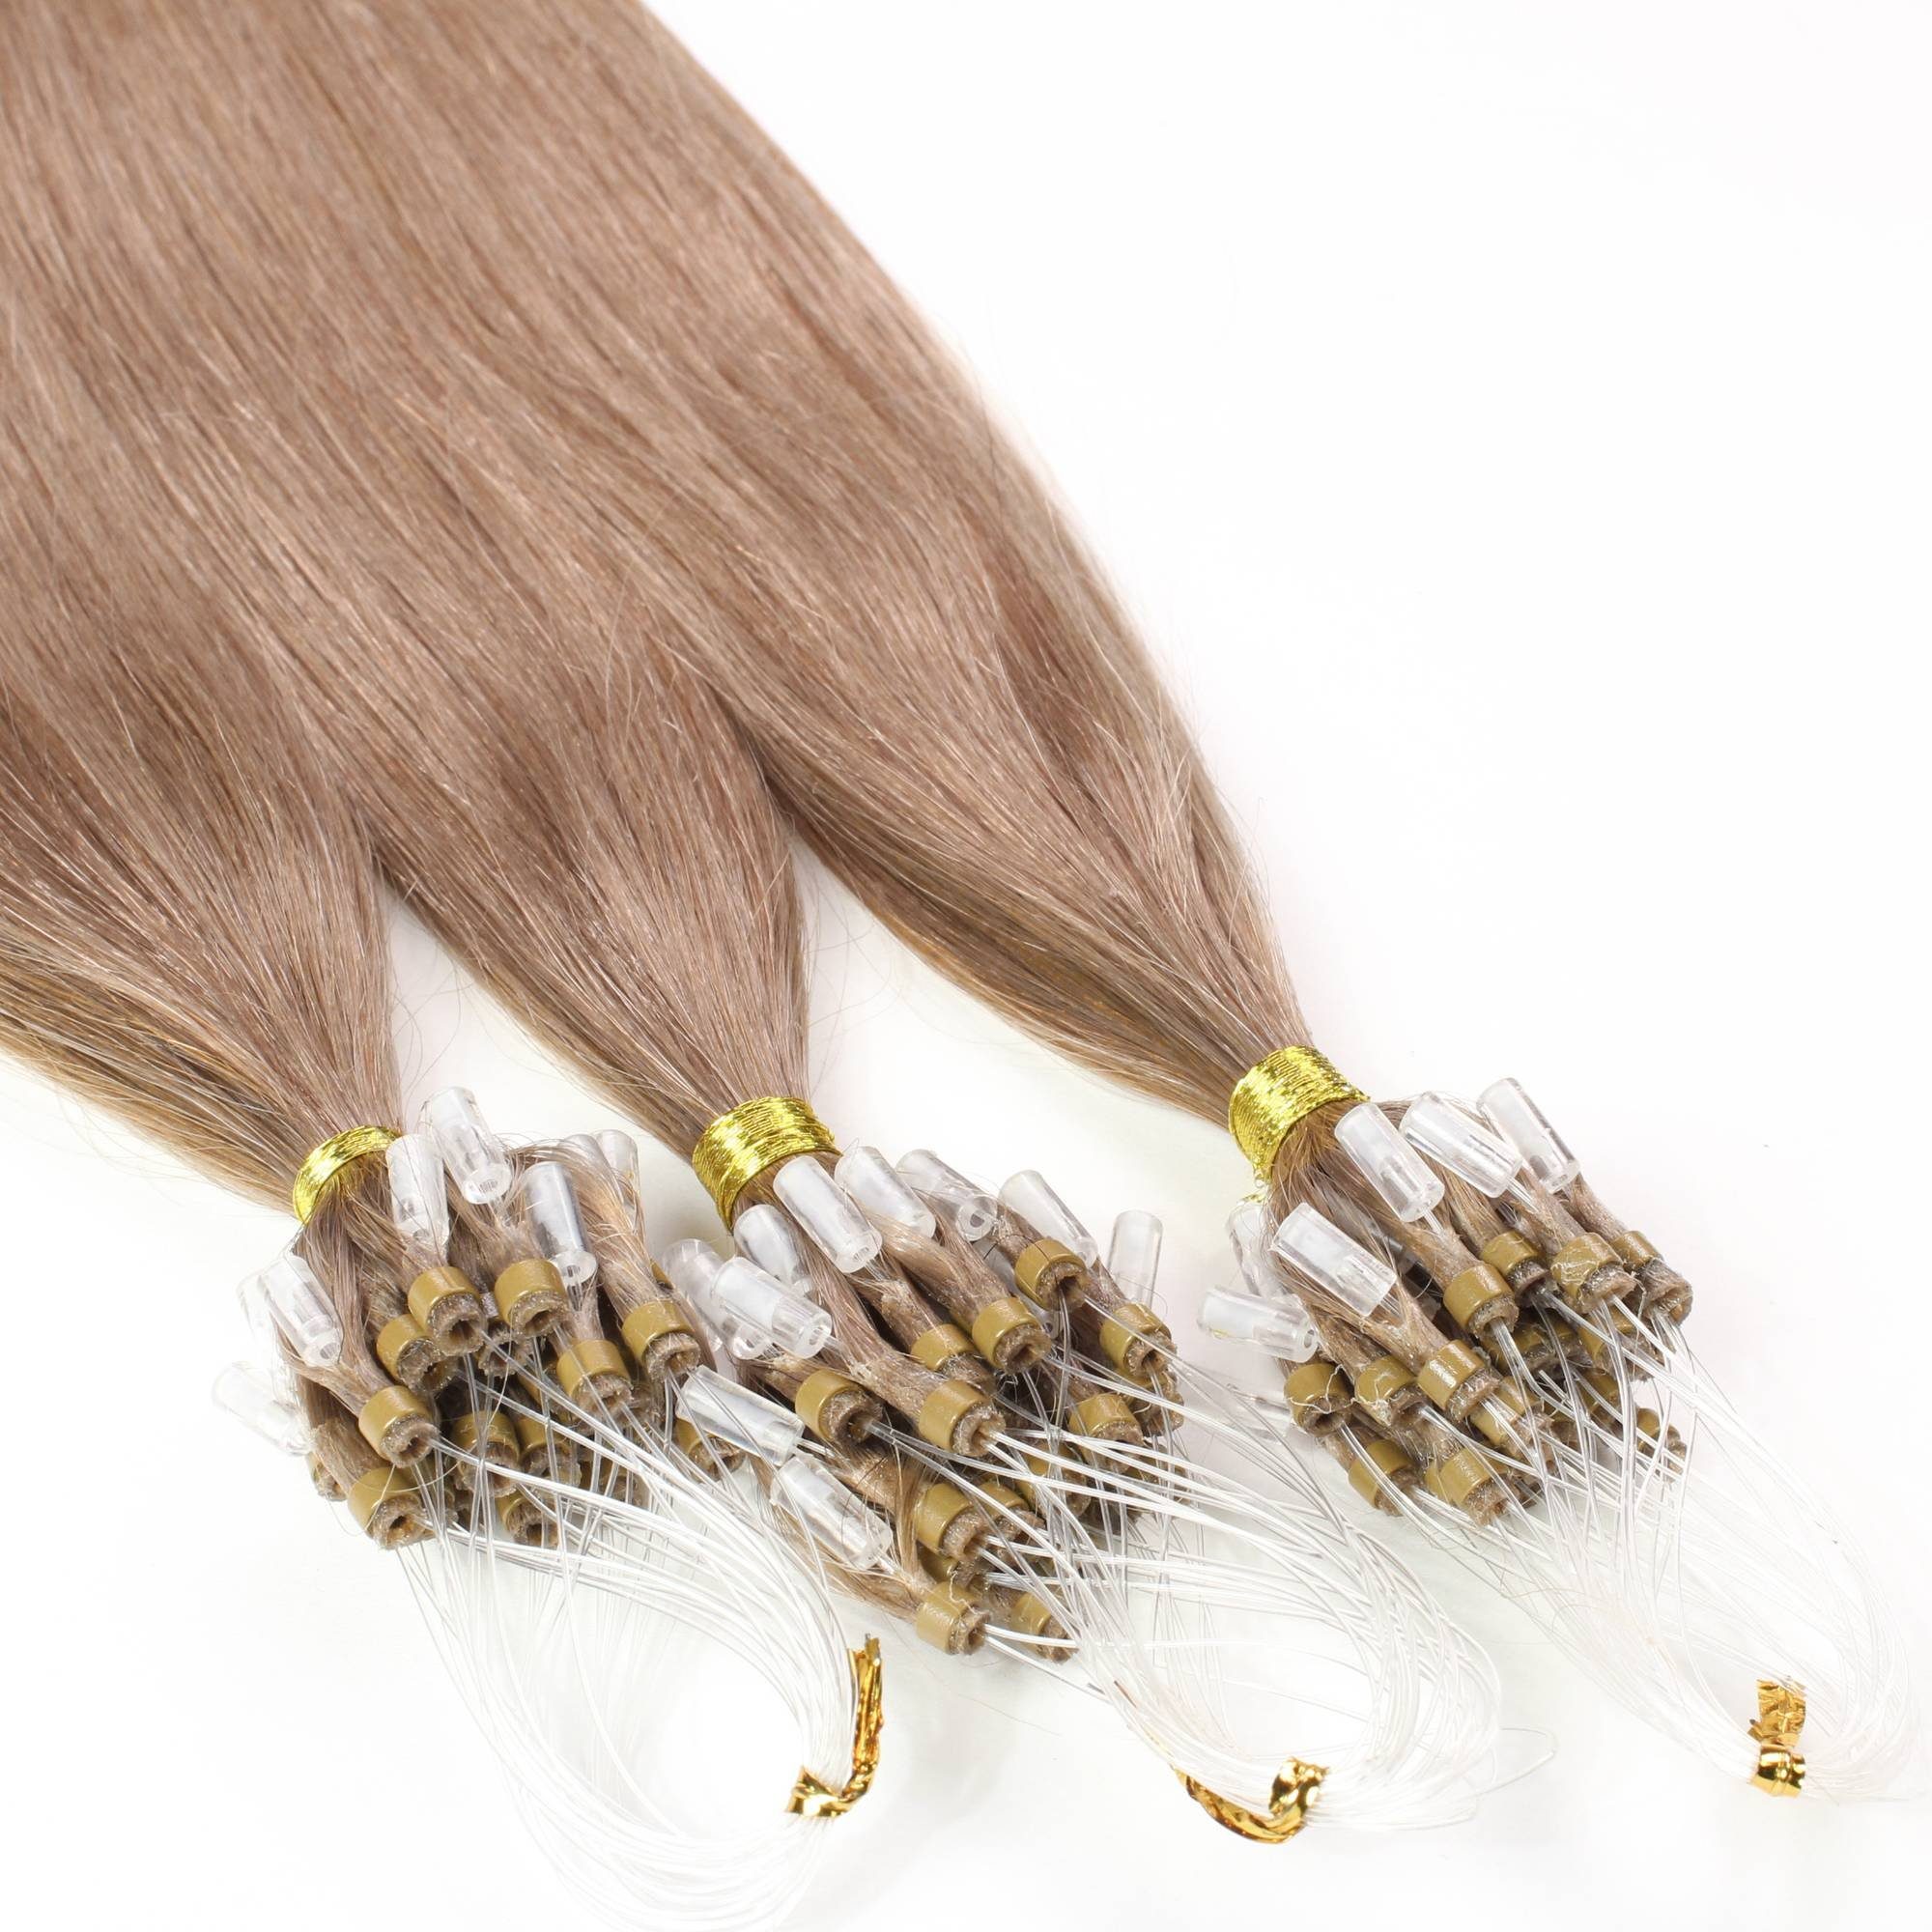 hair2heart Echthaar-Extension Microring Loops 0.5g Hell-Lichtblond 40cm #10/31 Gold-Asch glatt 